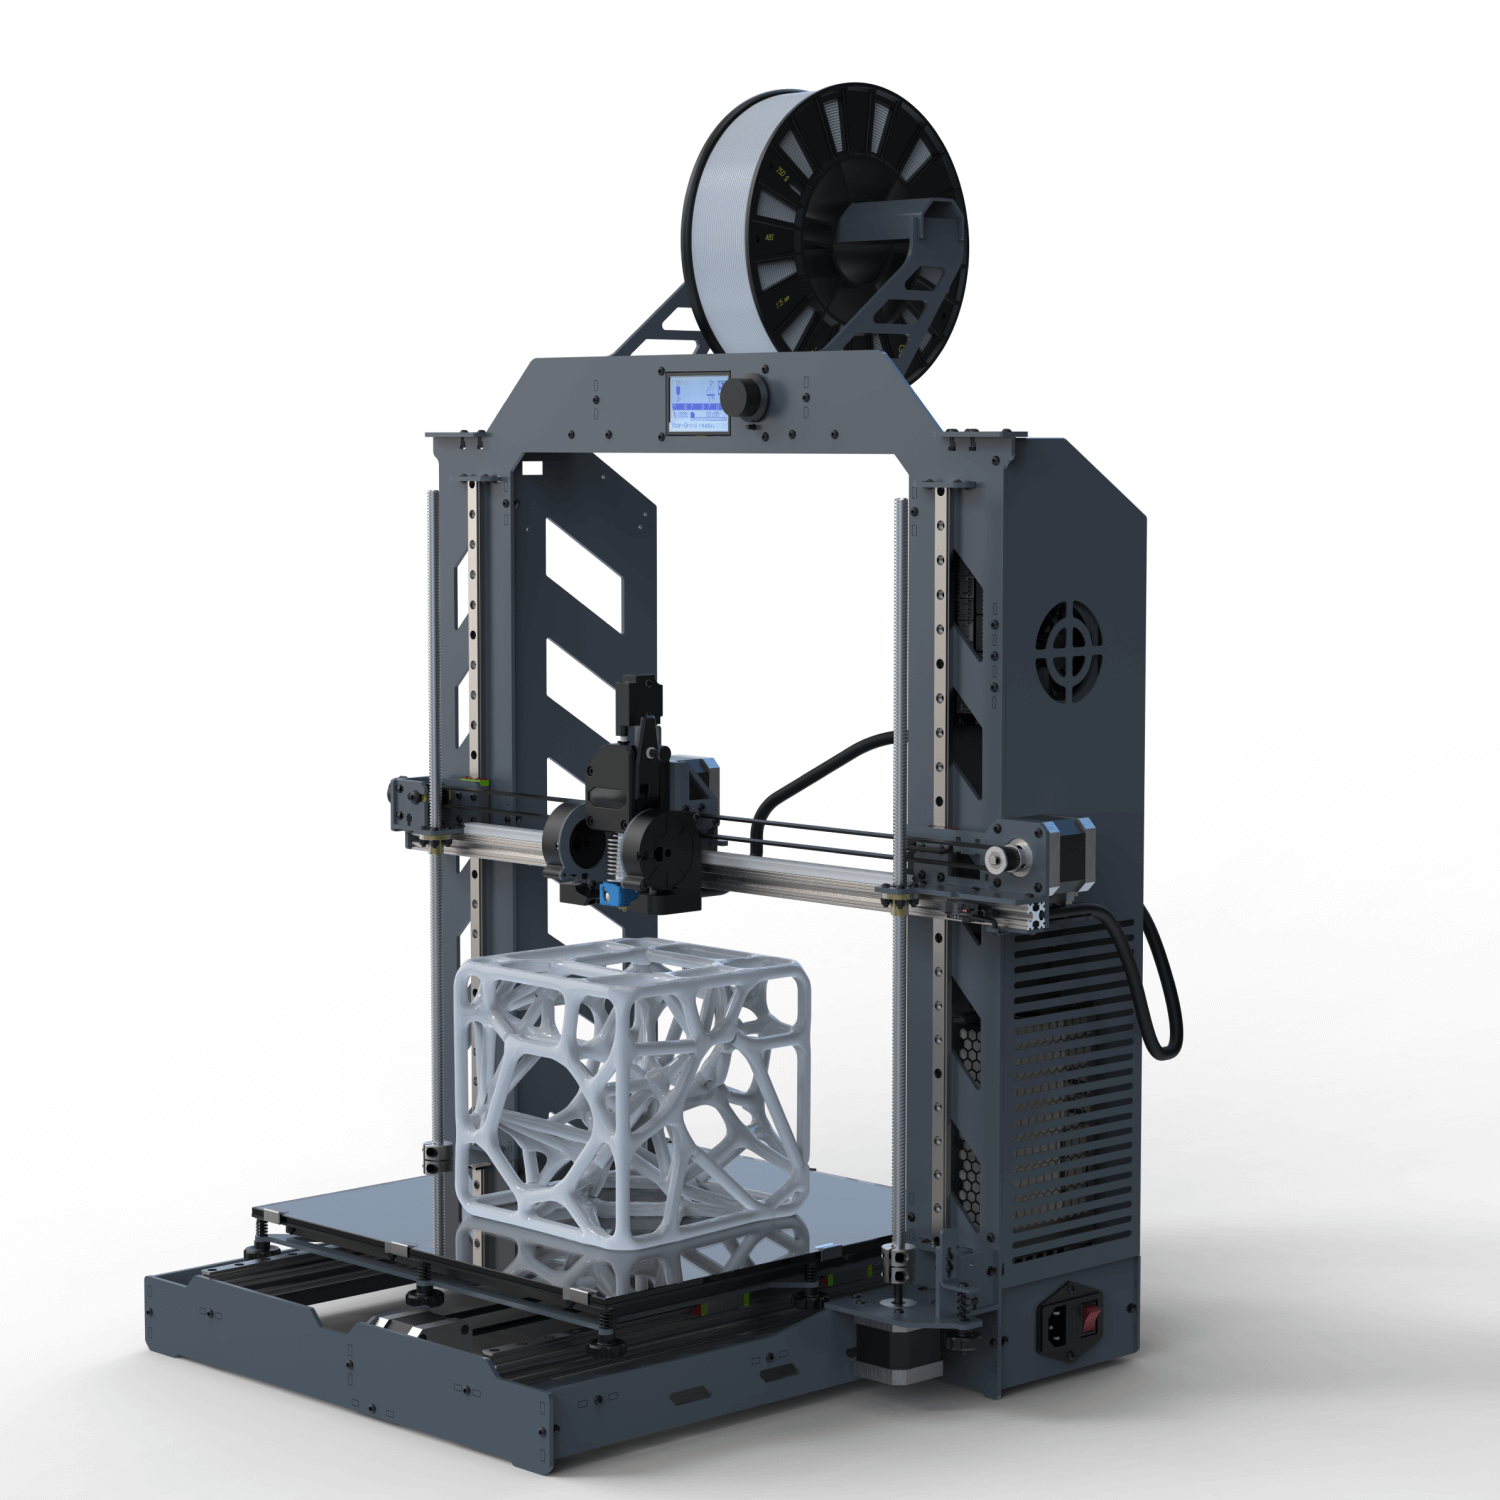 3D принтеры с рельсовыми направляющими – купить в Москве и всей РФ | Интернет-магазин Top3DShop